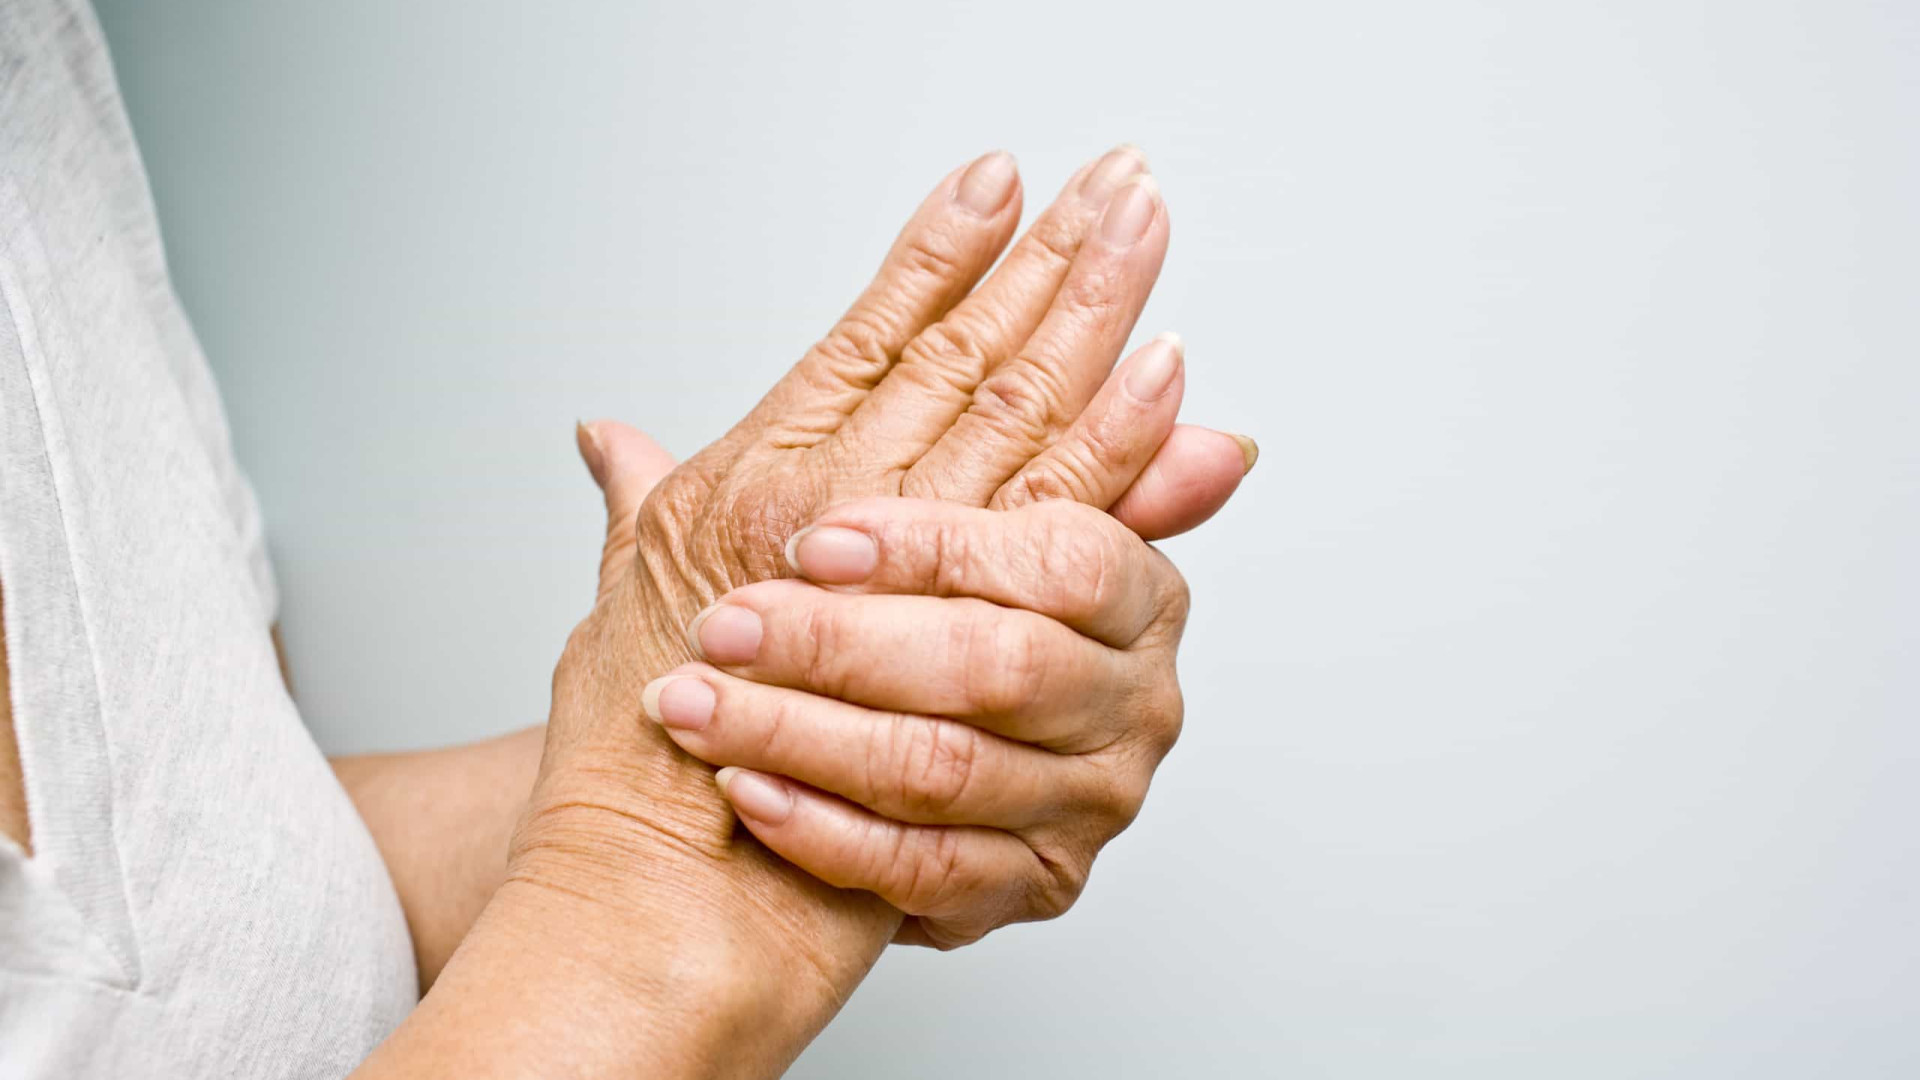 Sintomas sutis de câncer dos ossos que são confundidos com artrite